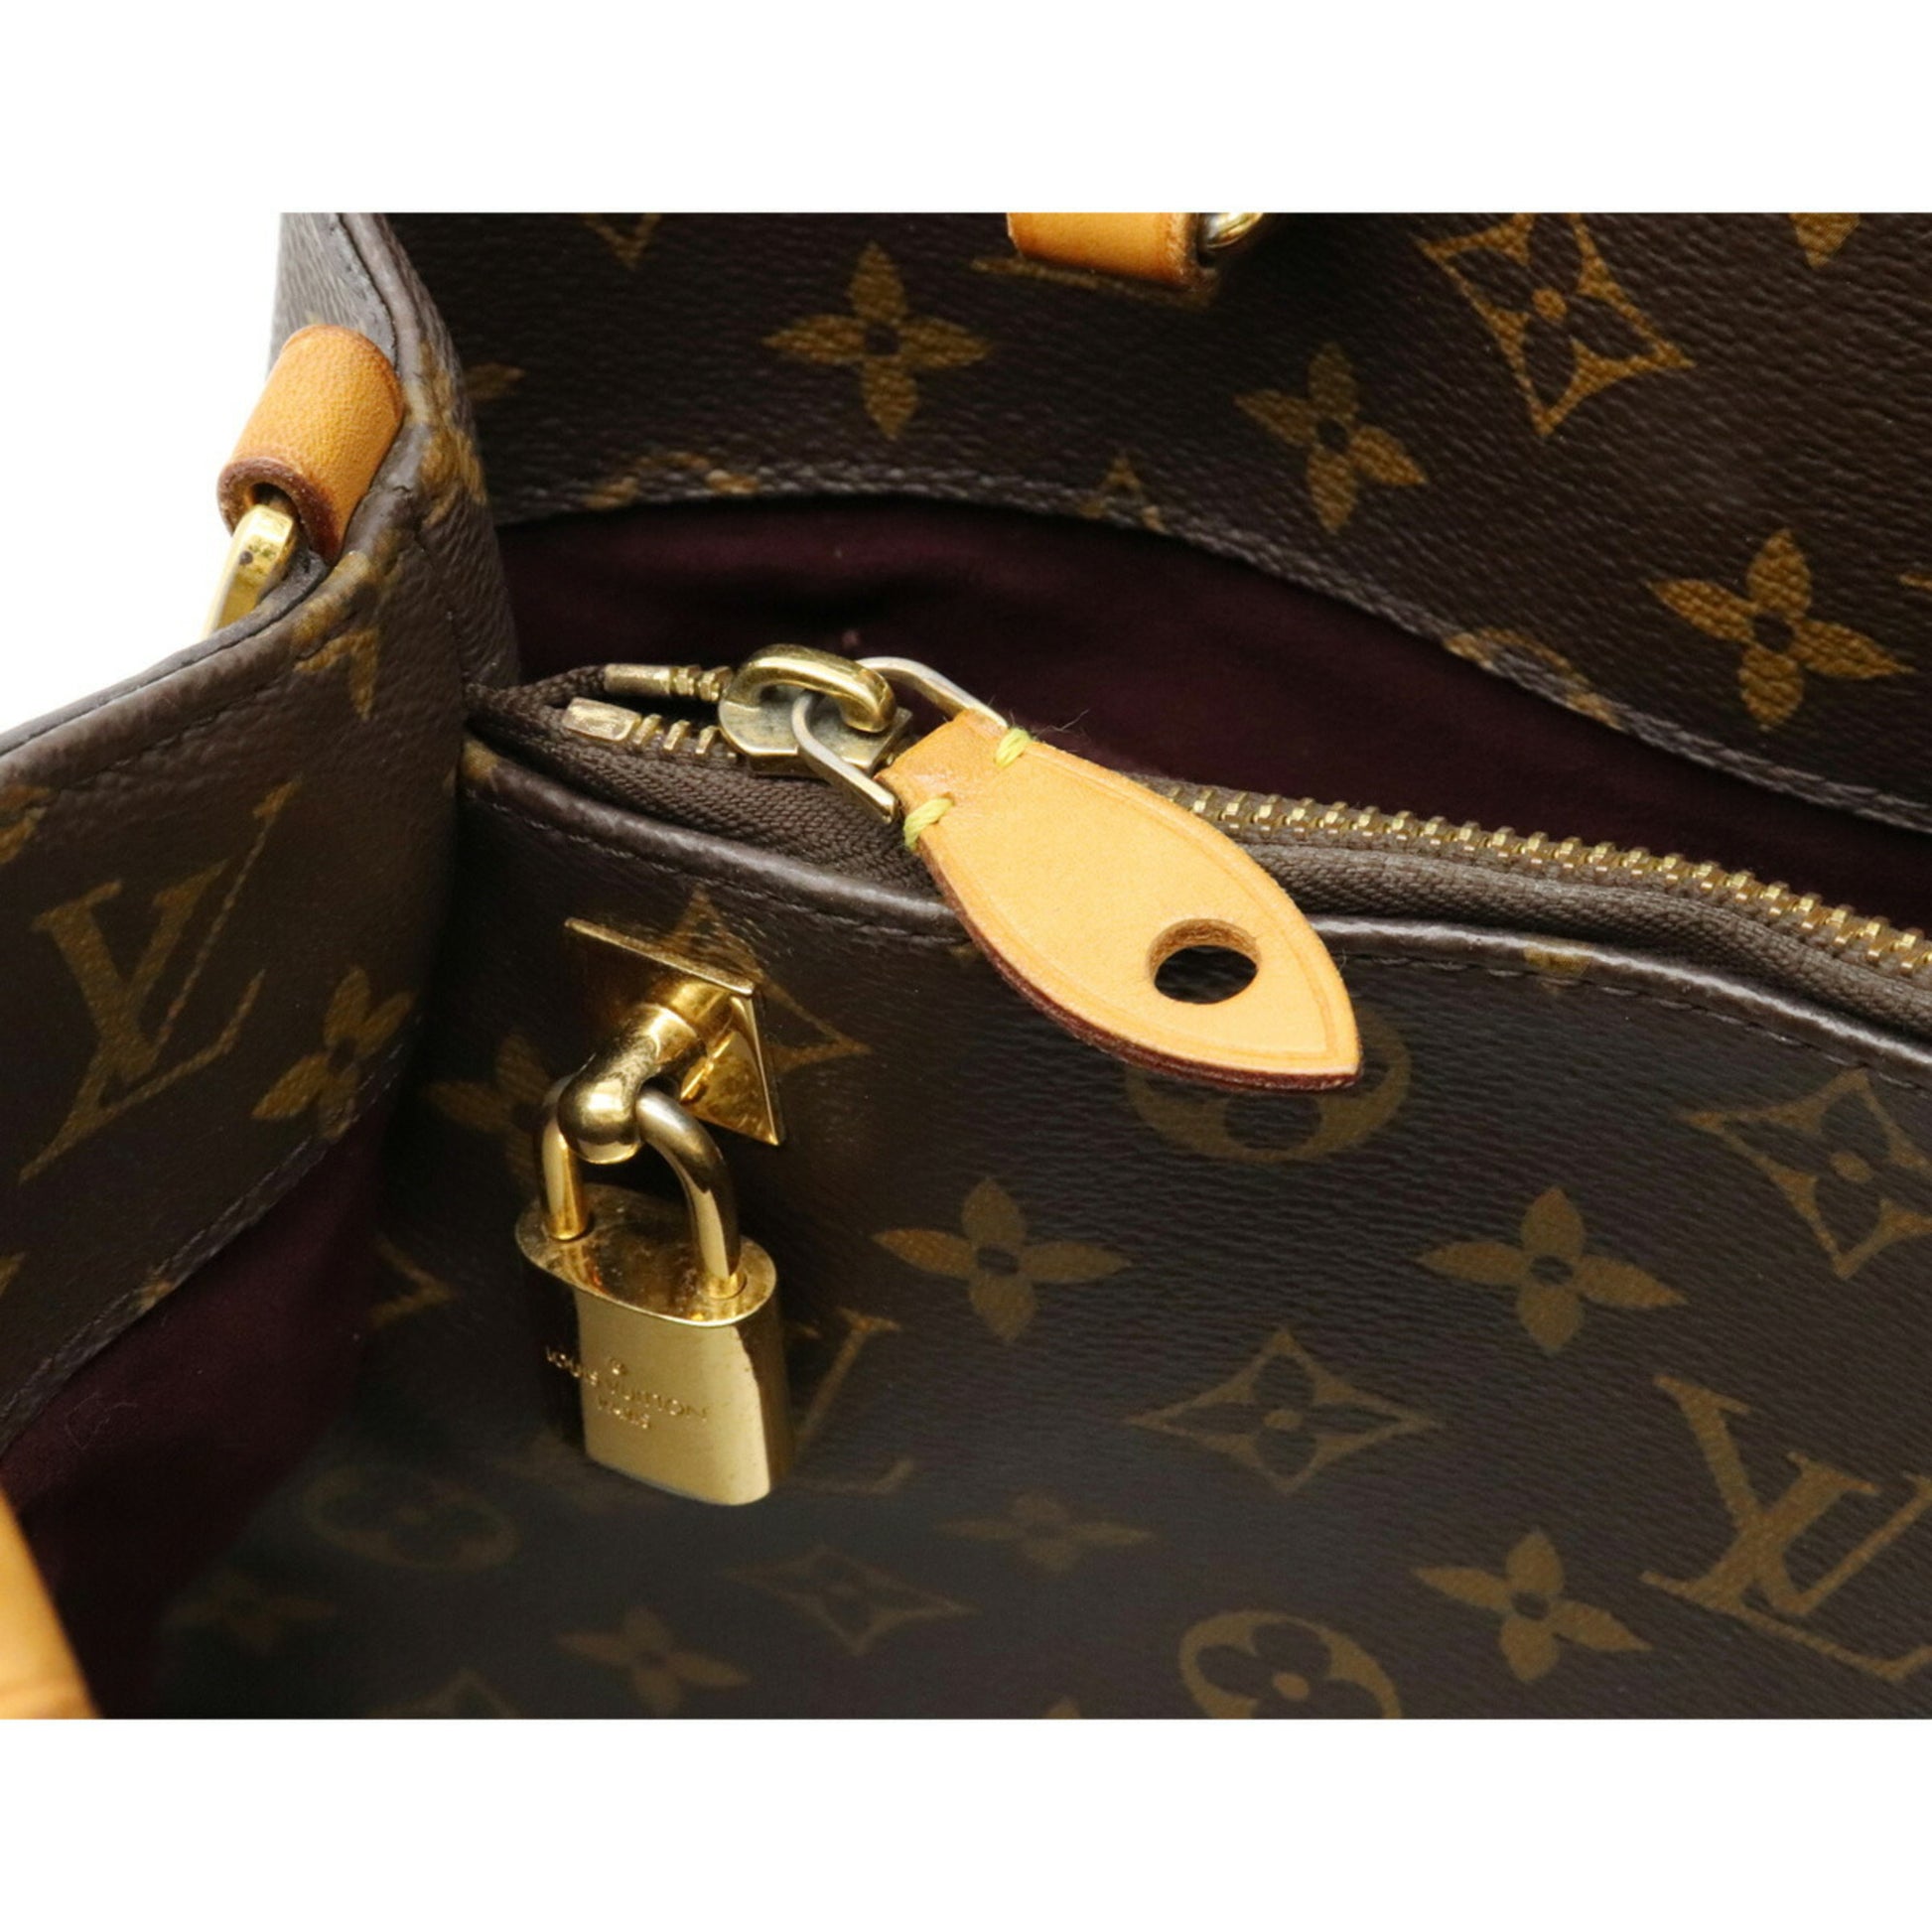 Shop Louis Vuitton Montaigne mm (M41056, M41056) by CITYMONOSHOP